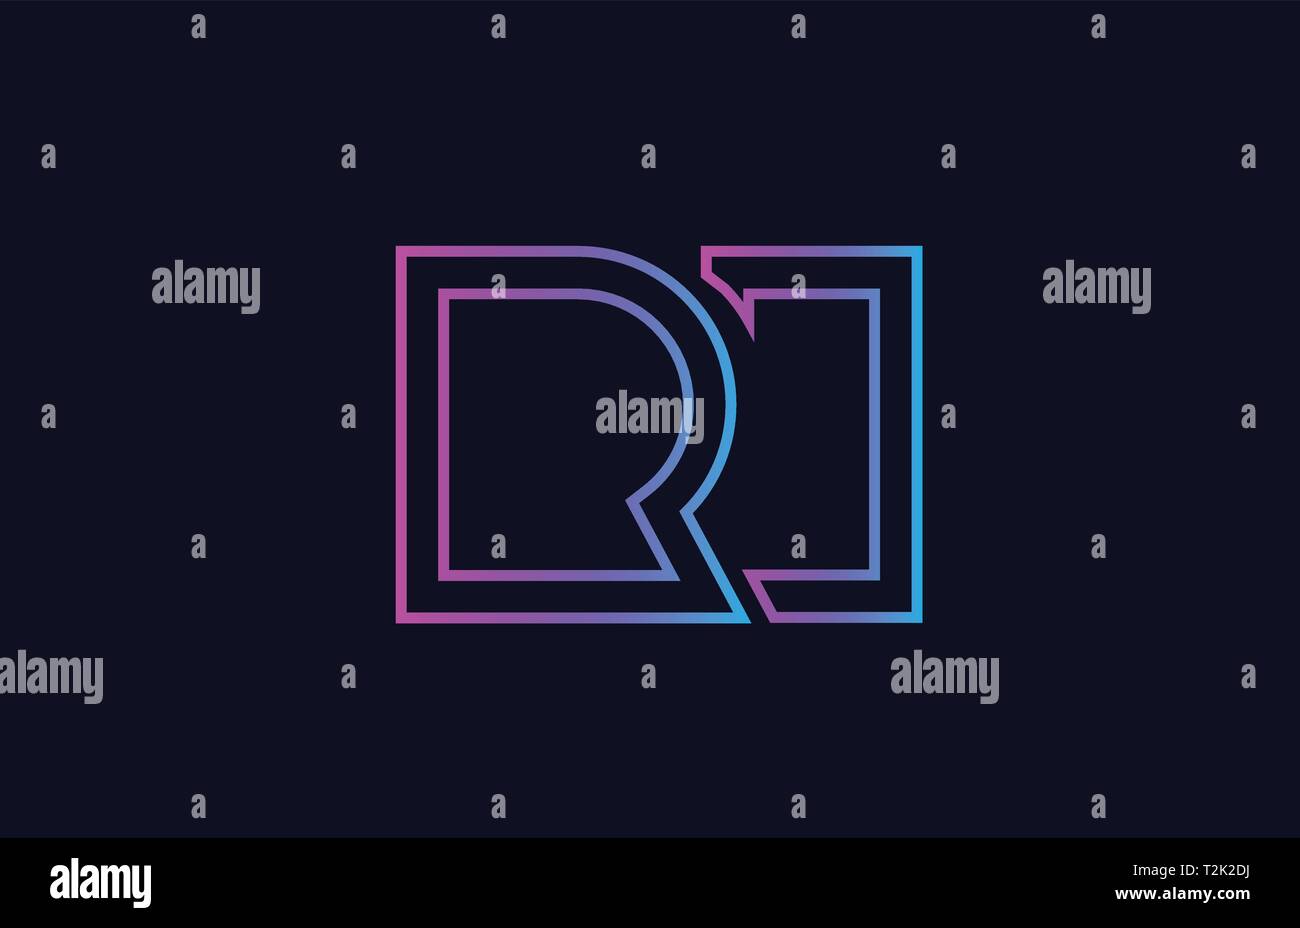 Blau Rosa Buchstaben logo Kombination ri r i Design geeignet für ein Unternehmen oder ein Geschäft Stock Vektor